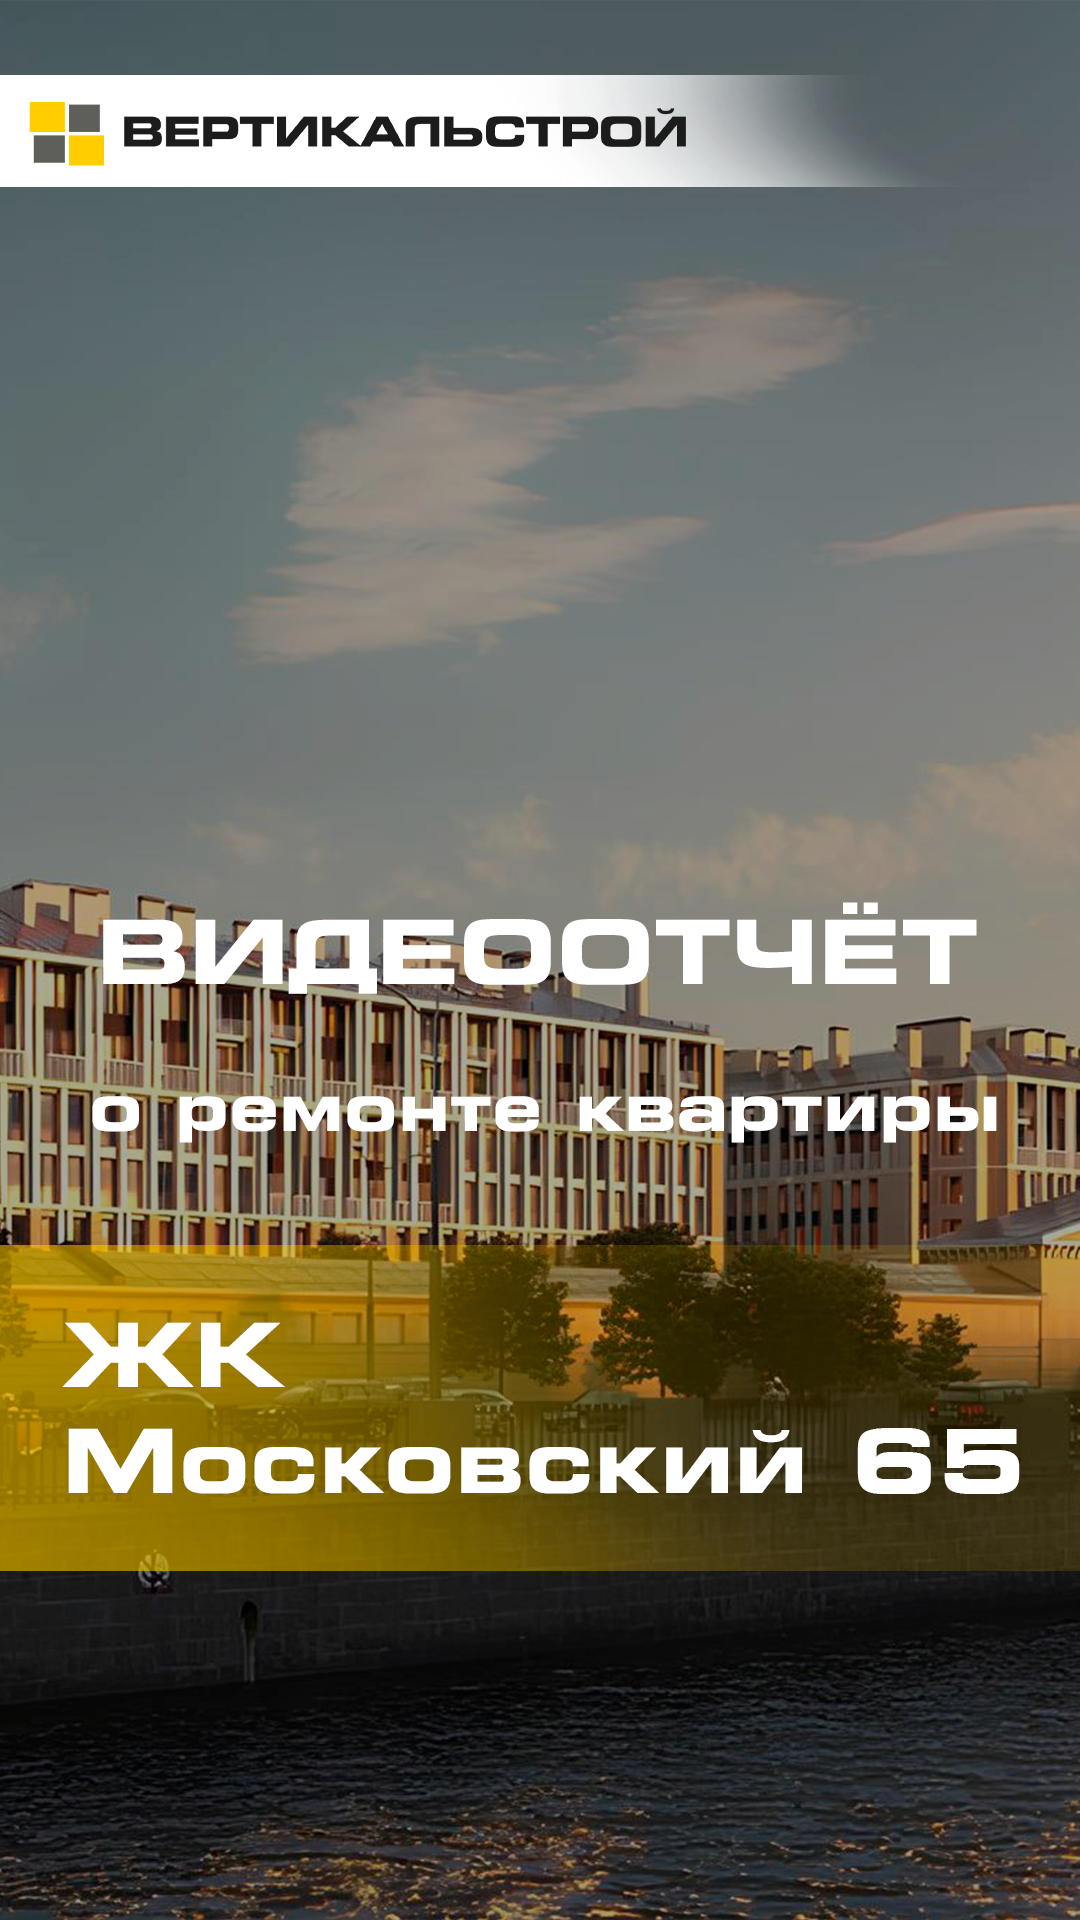 Московский 65 от Legenda - Ремонт квартиры от ВЕРТИКАЛЬСТРОЙ